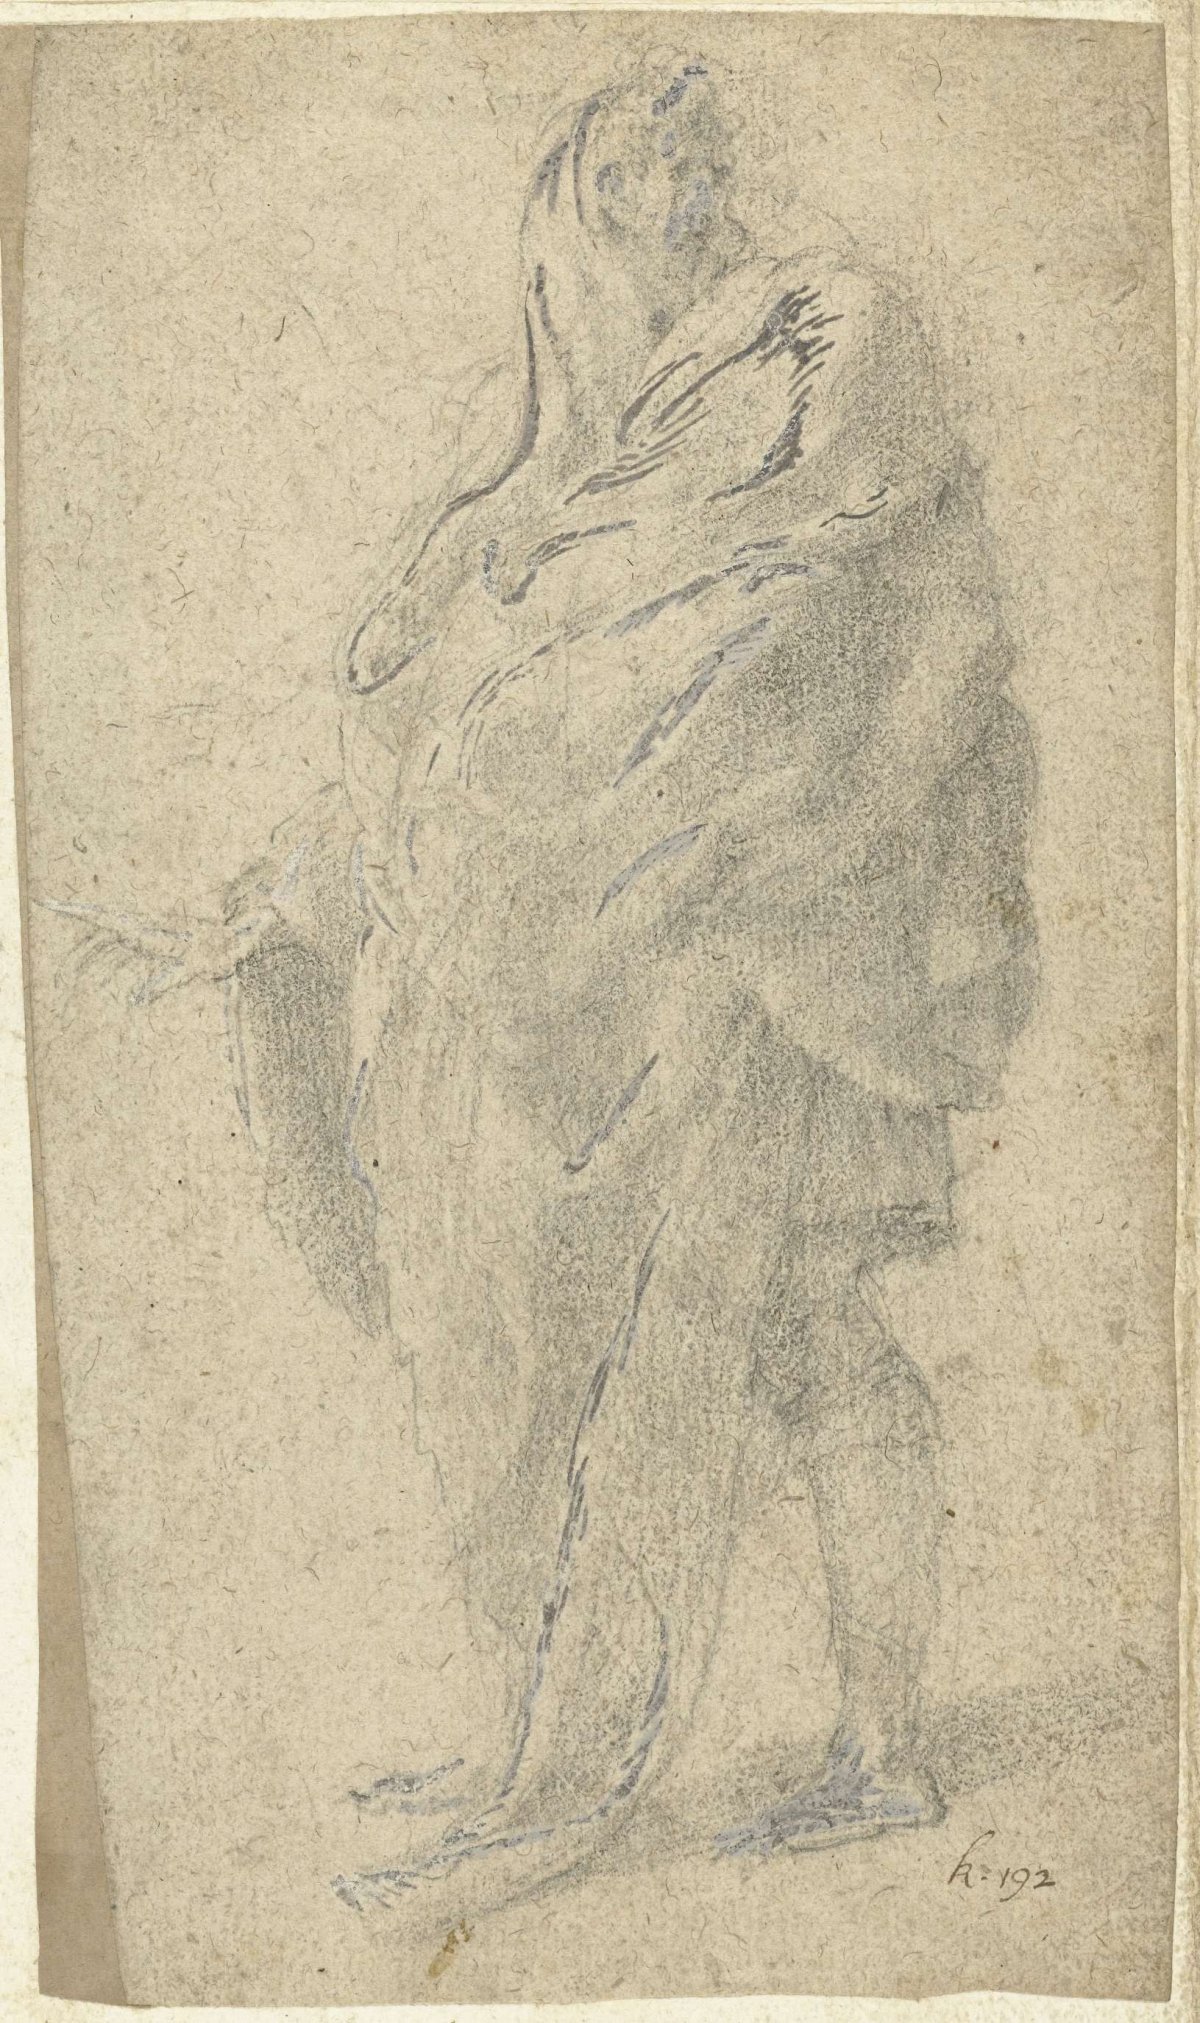 Draped figure, distressing to the left, Polidoro da Caravaggio, 1502 - 1543